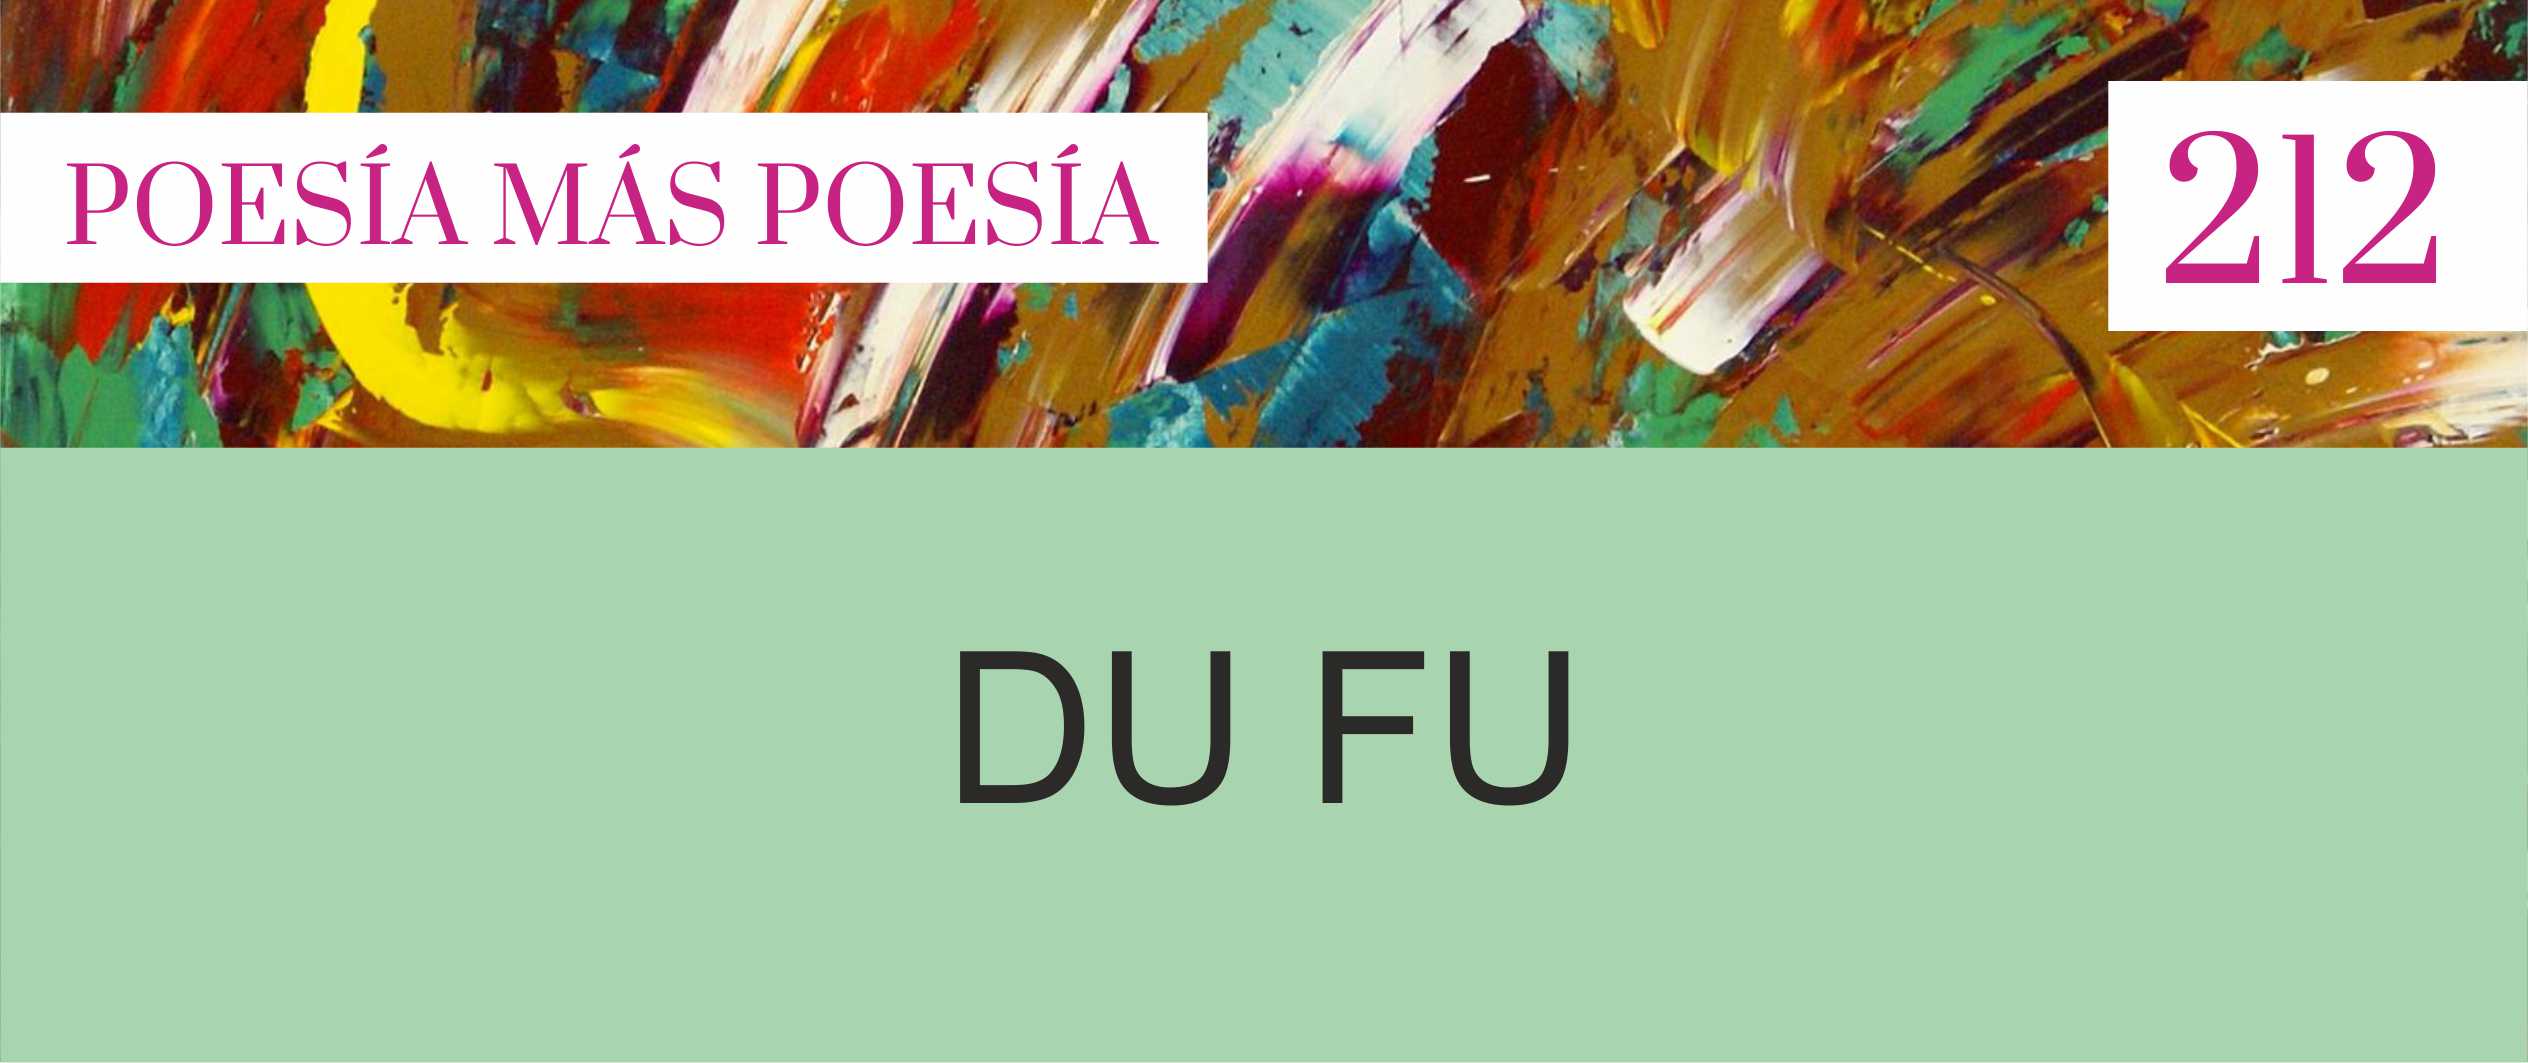 PORTADAS REVISTA POESIA MAS POESIA PARA SLIDER WEB 2 - Poesia Online